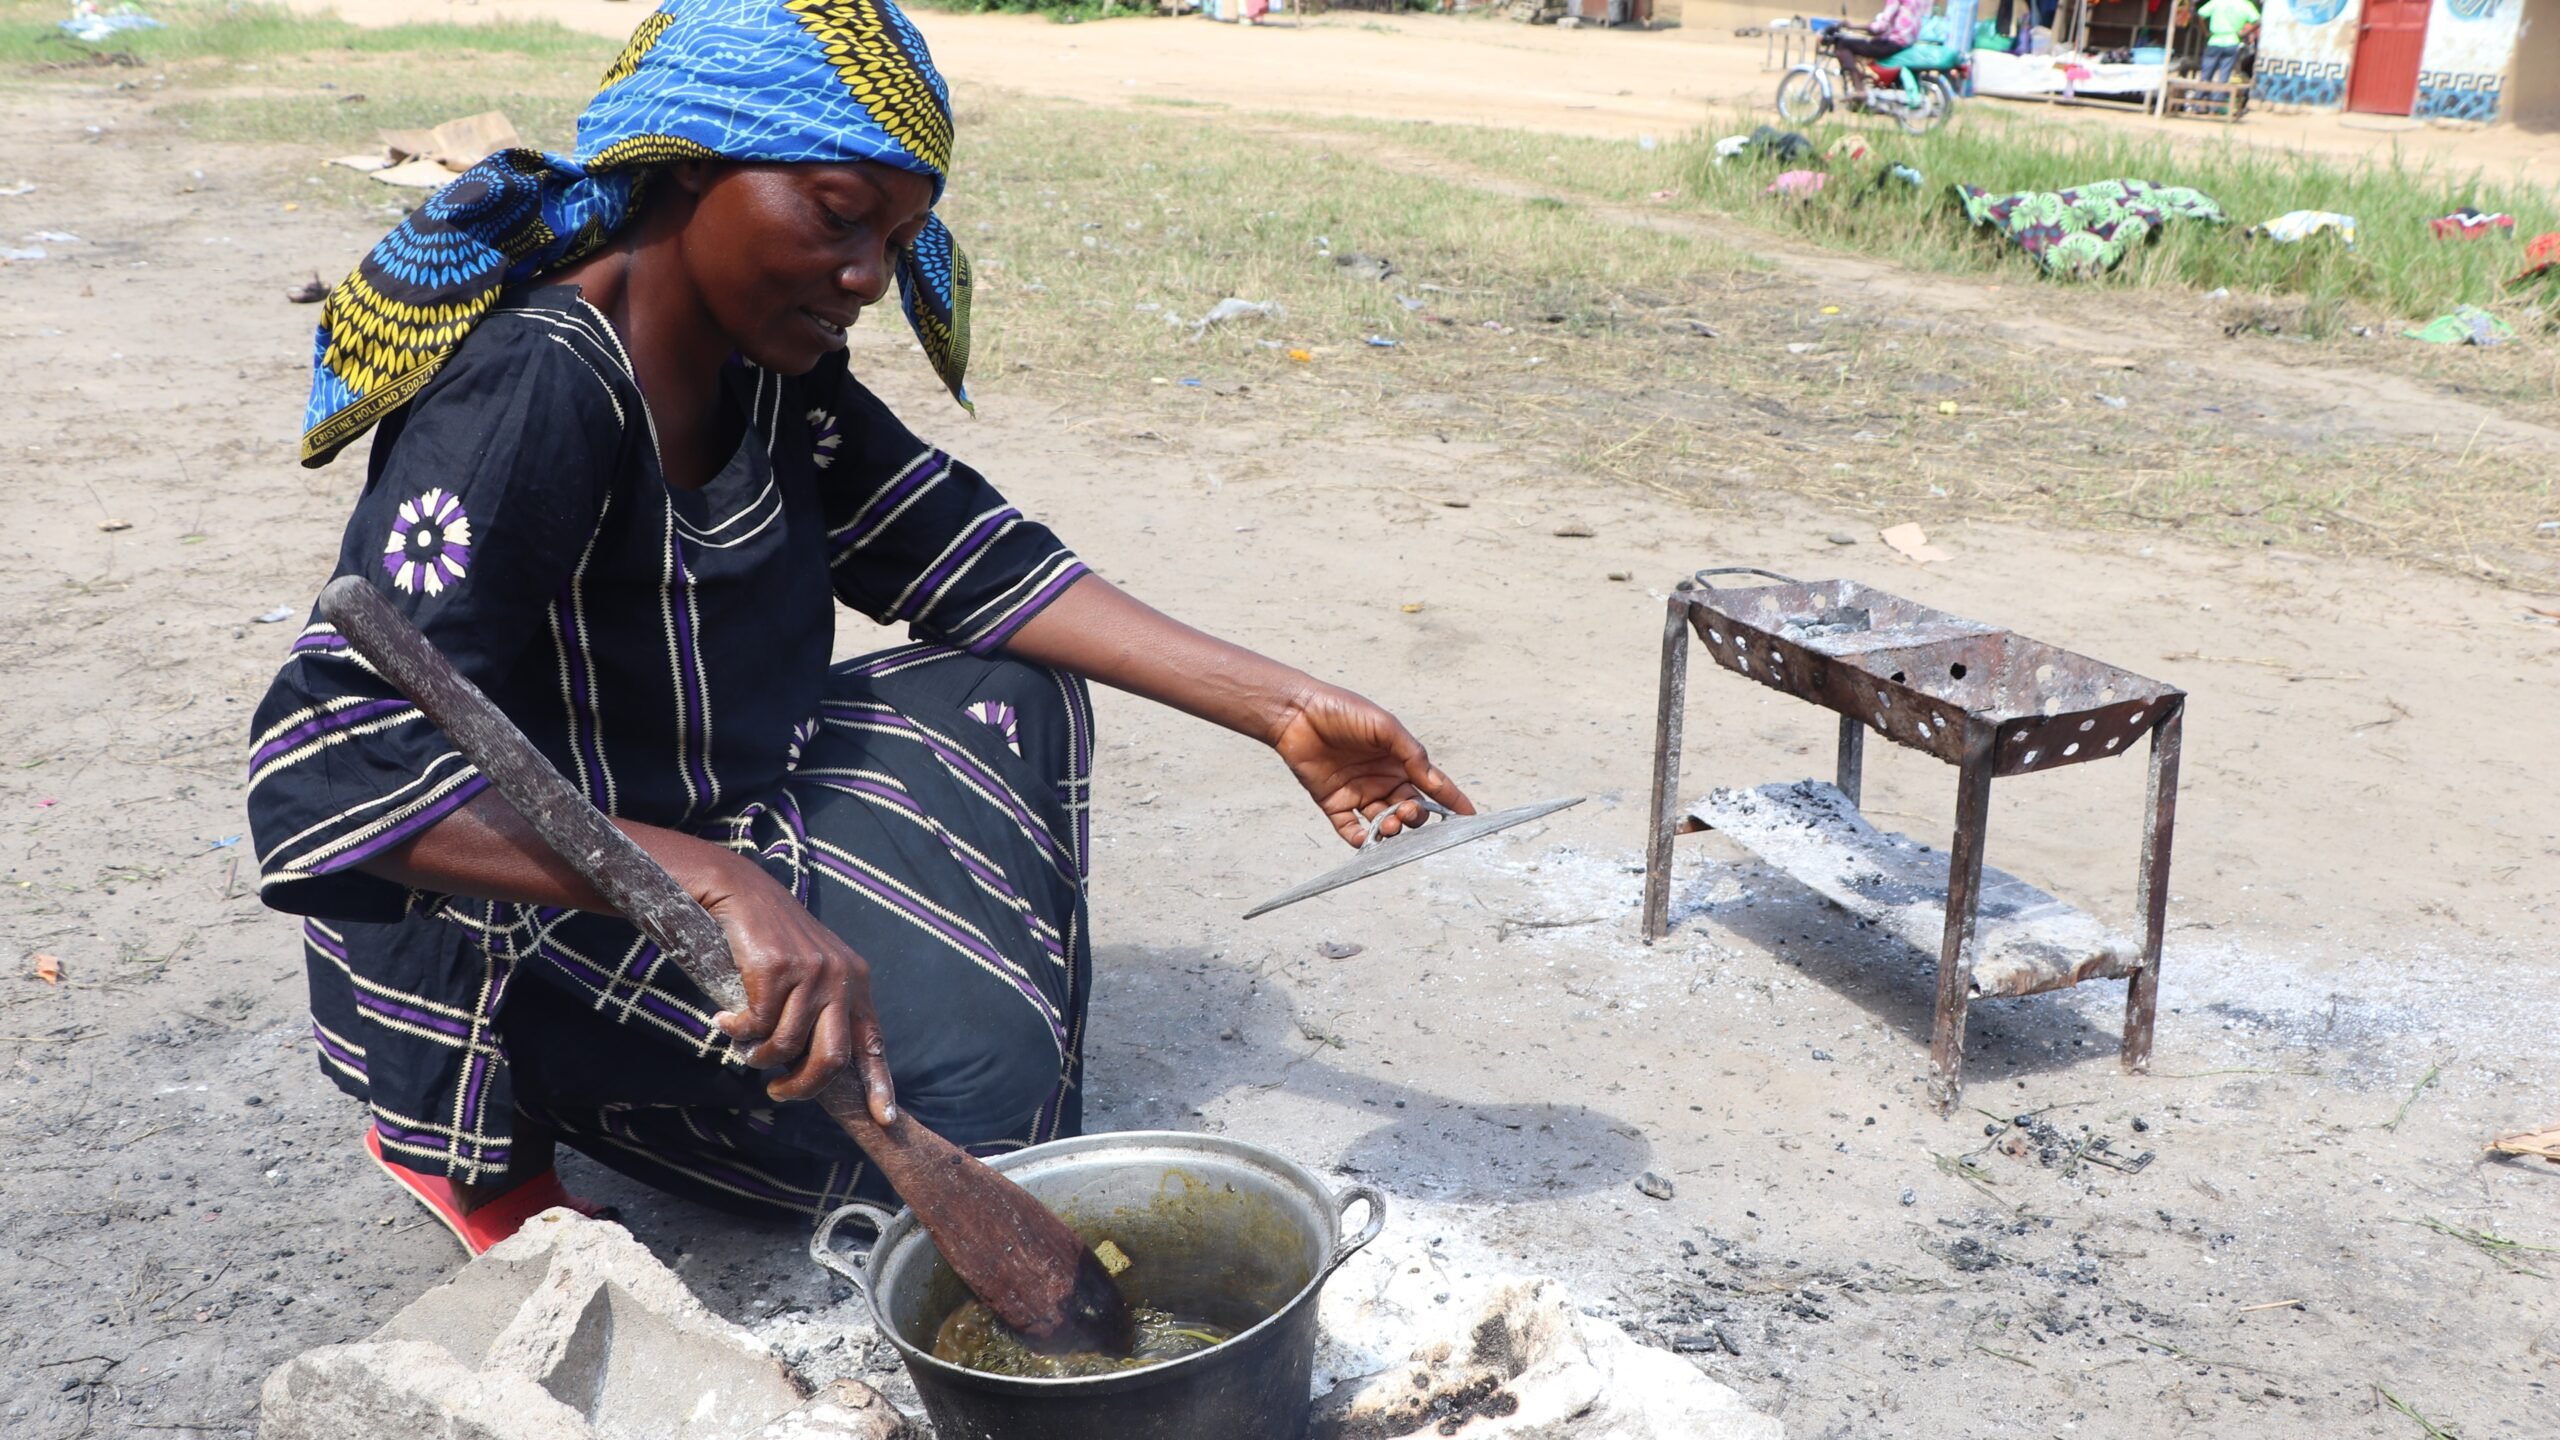 Mayanda Béatrice, 54 jaar oud, bereidt zoete aardappel bladeren voor haar gezin. Ze ontvluchtte het dorp Bokala, in de provincie Mai Ndombe, waar ze op het veld werkte. Nu woont ze sinds augustus in het gemeenschapscentrum Malebo in de stad Bandundu. Samen met haar drie kinderen en haar schoonzoon stapte ze vijf dagen lang voor ze toekwam in Bandundu. © UNHCR/Simon Lubuku